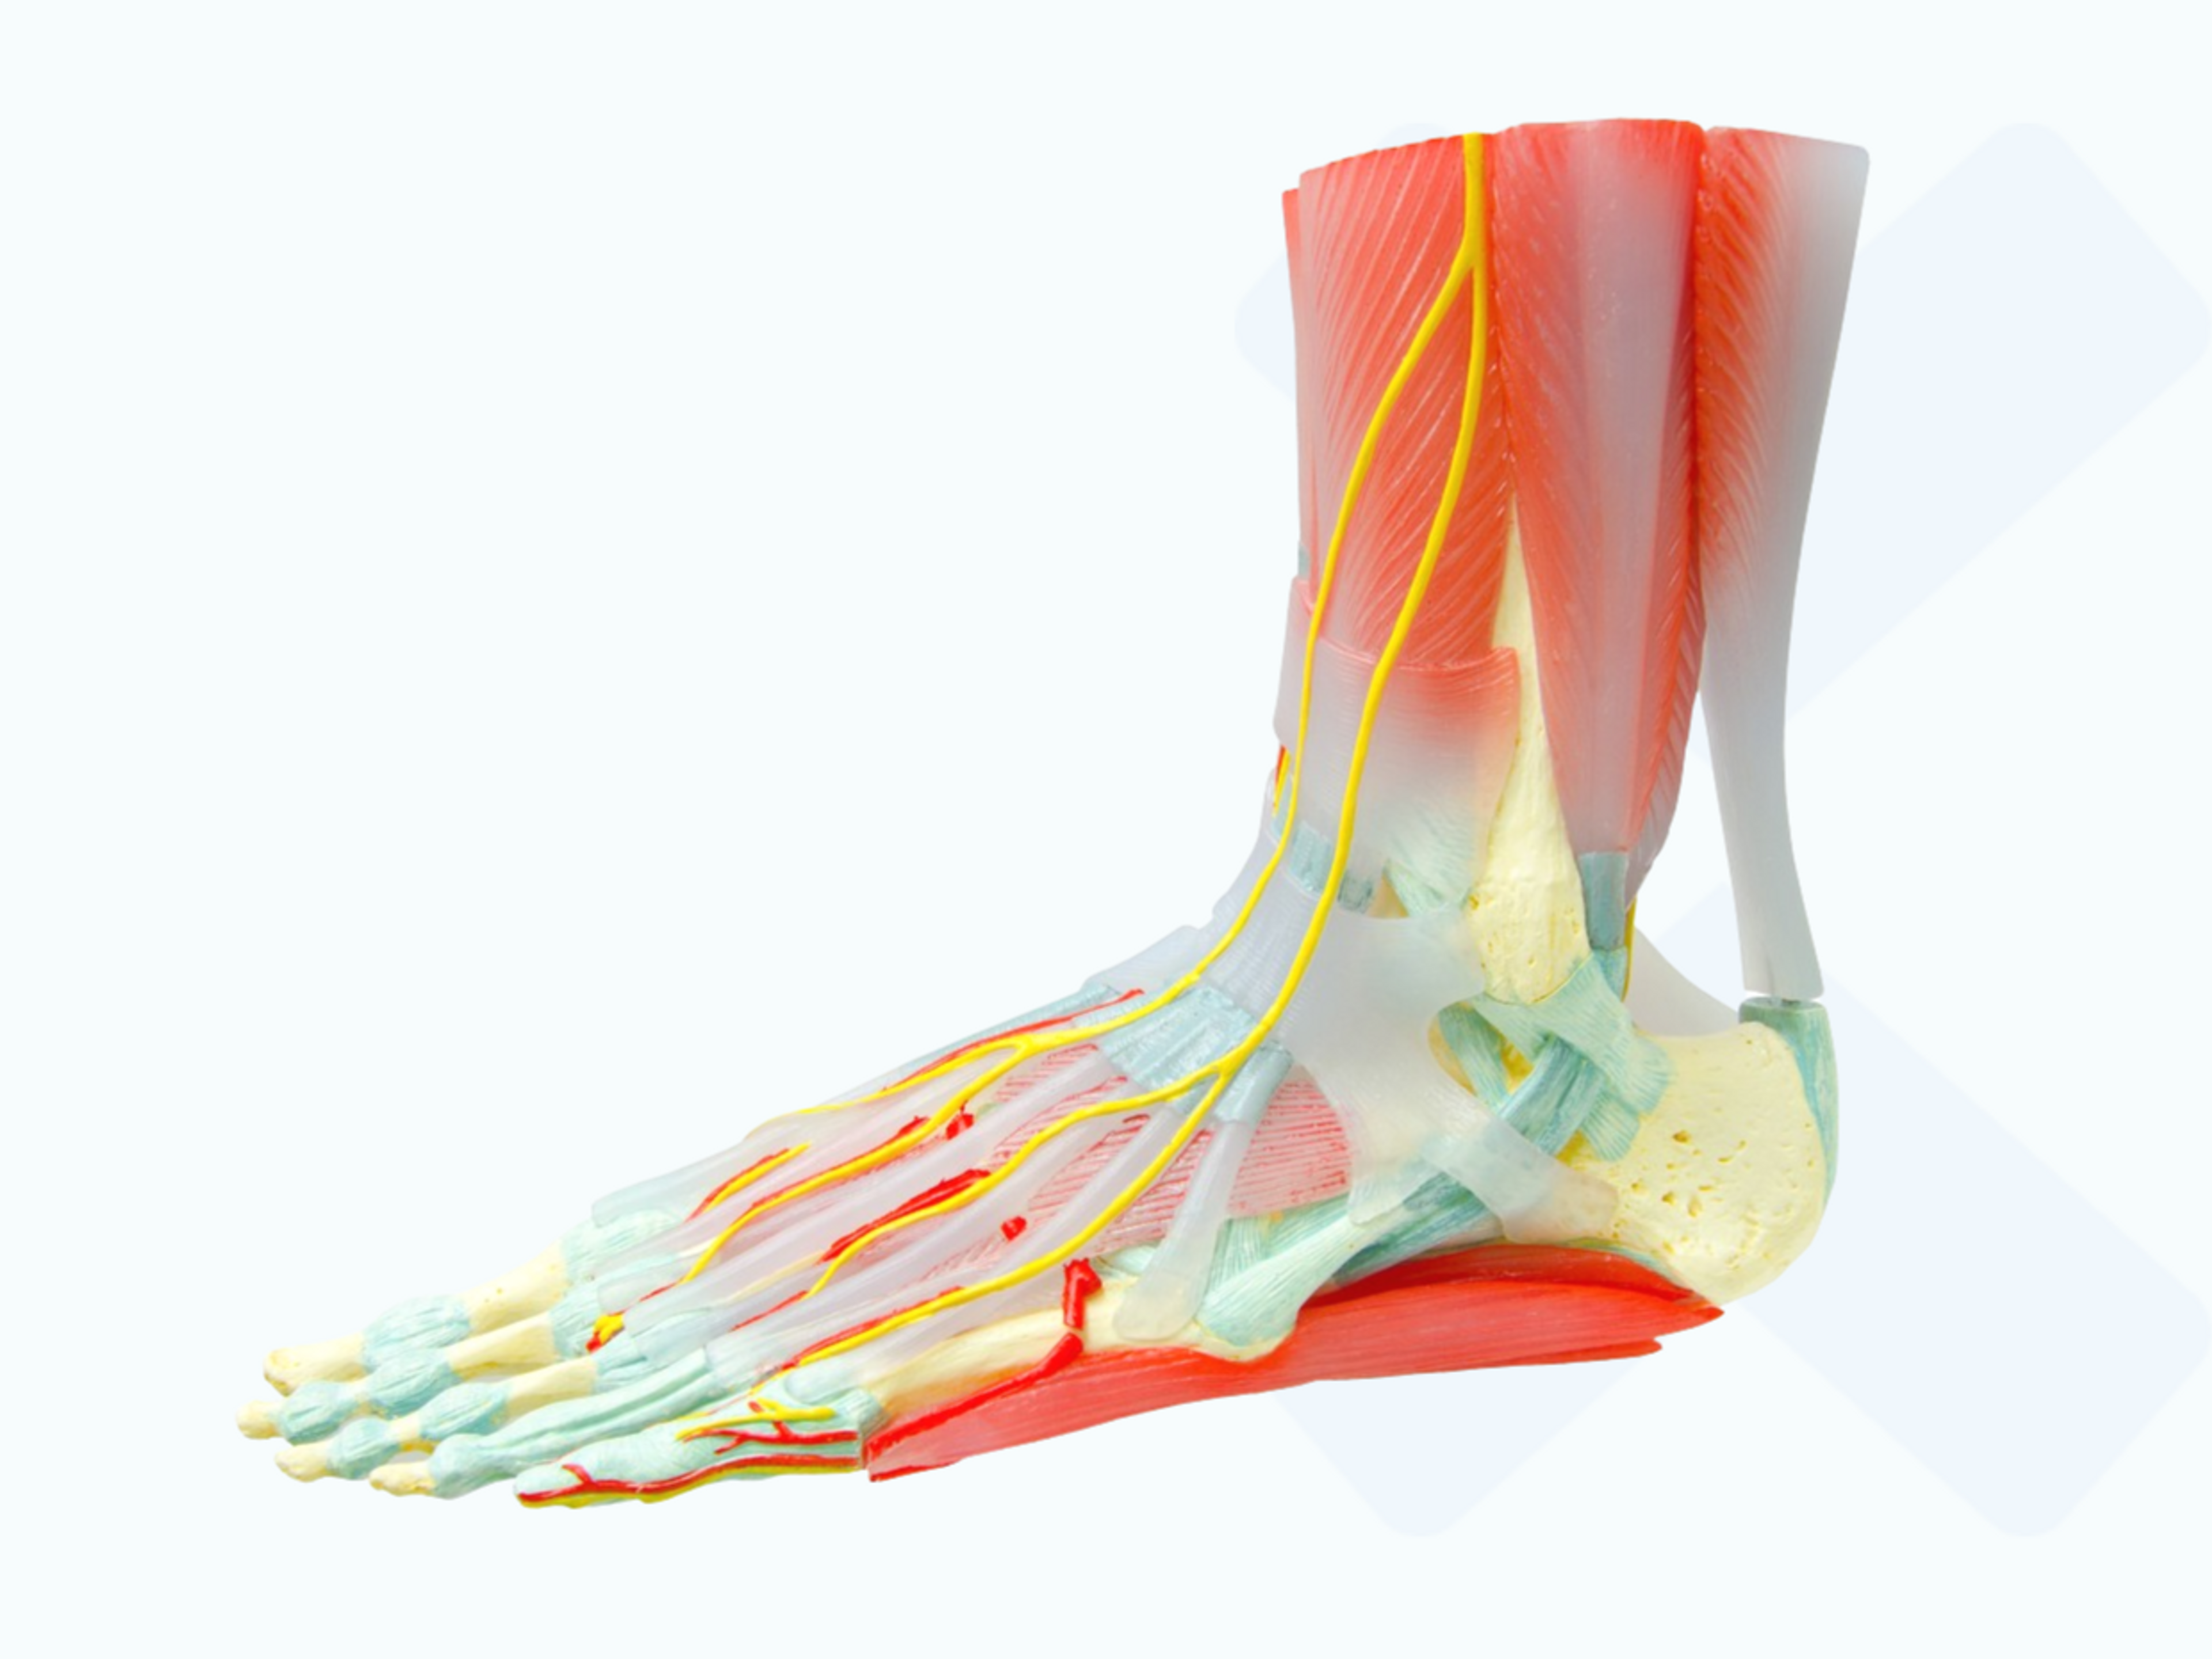 Varios tendones rodean la articulación del tobillo para aportar estabilidad.